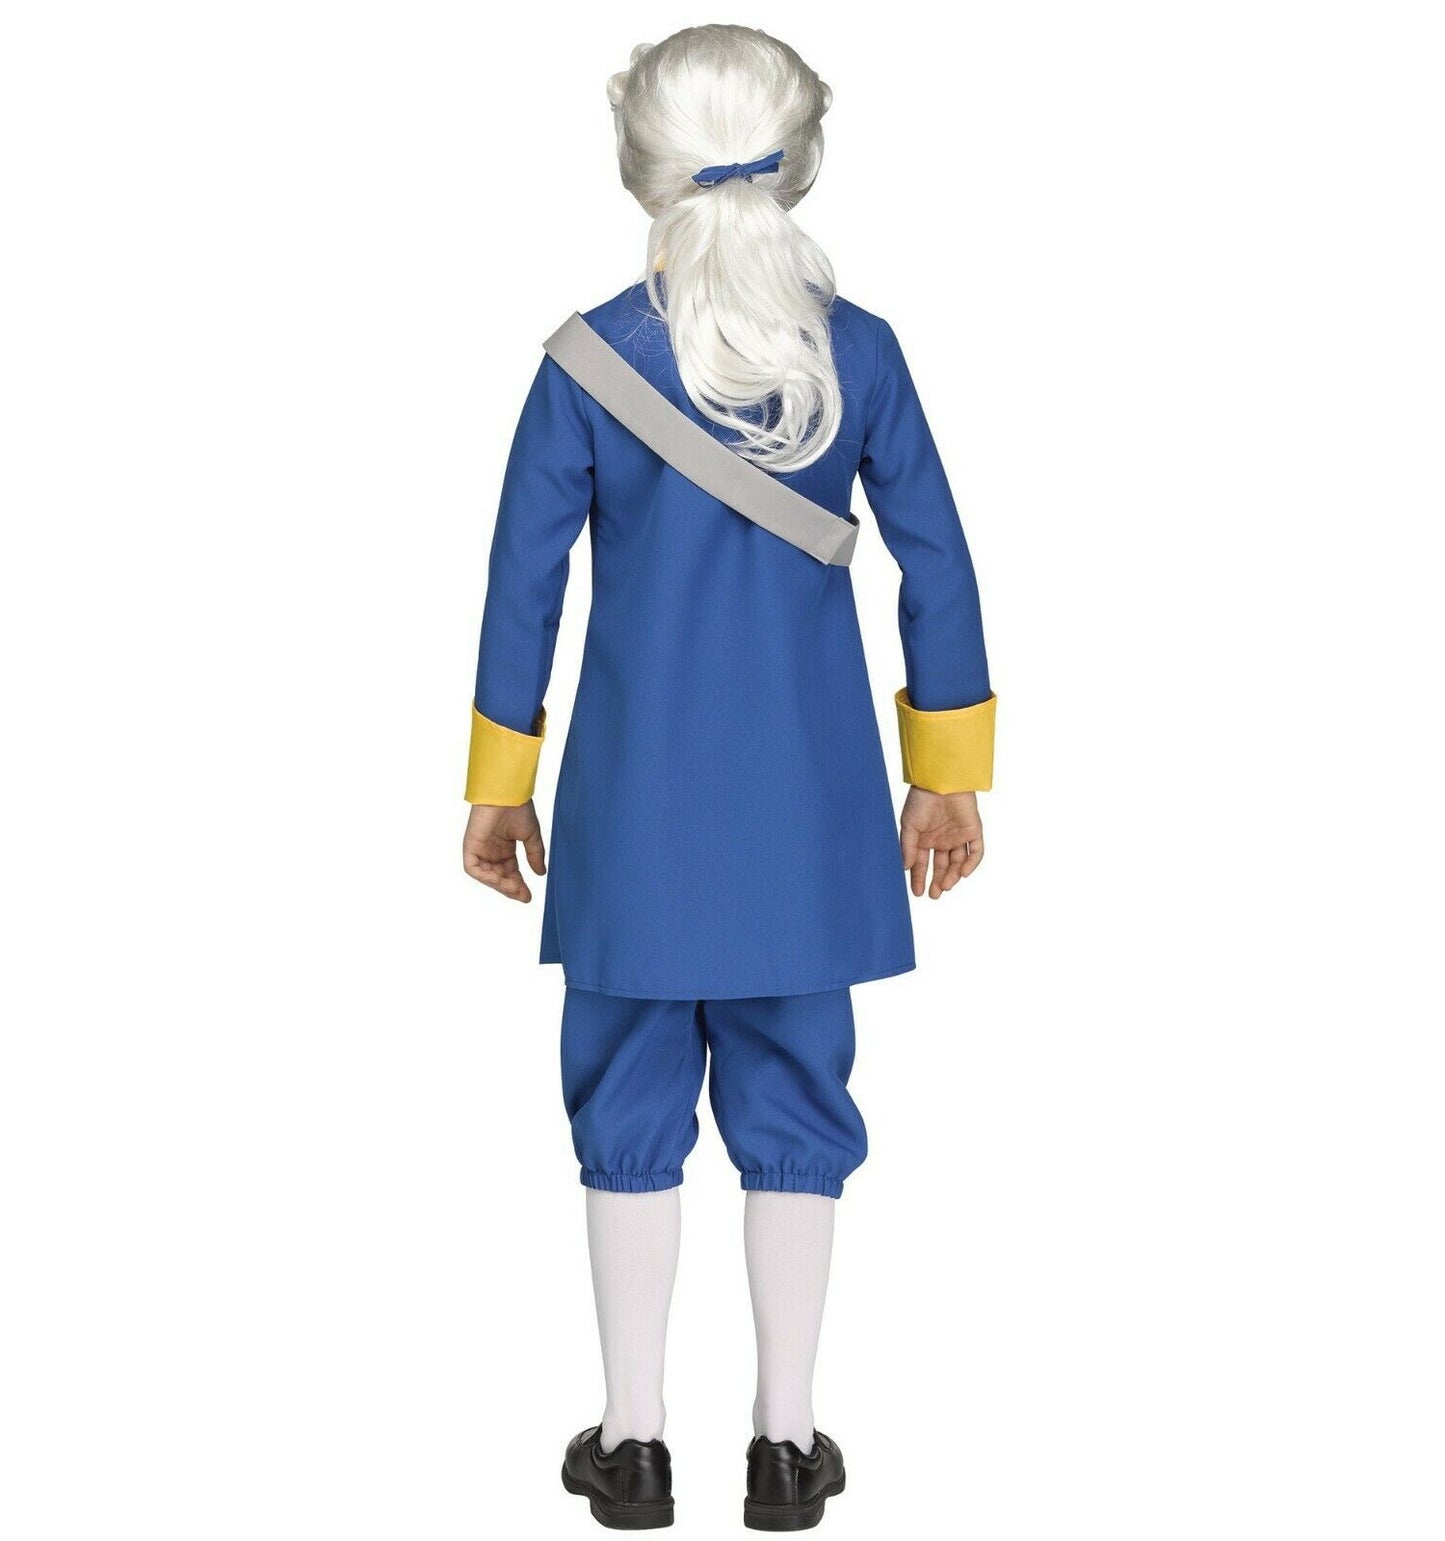 George Washington President Historical Child Costume